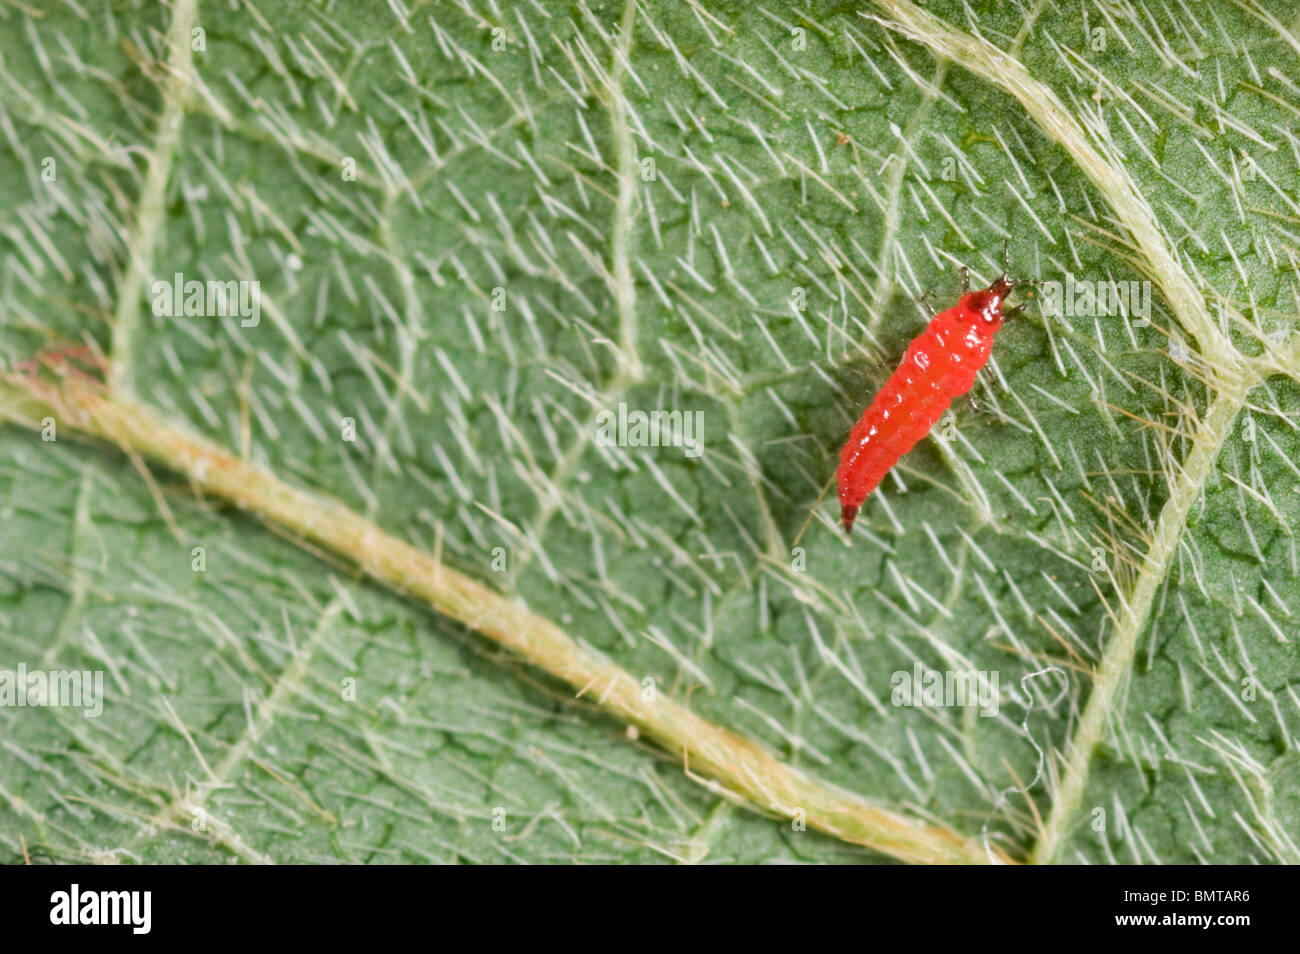 Red predatory thrips larva Stock Photo